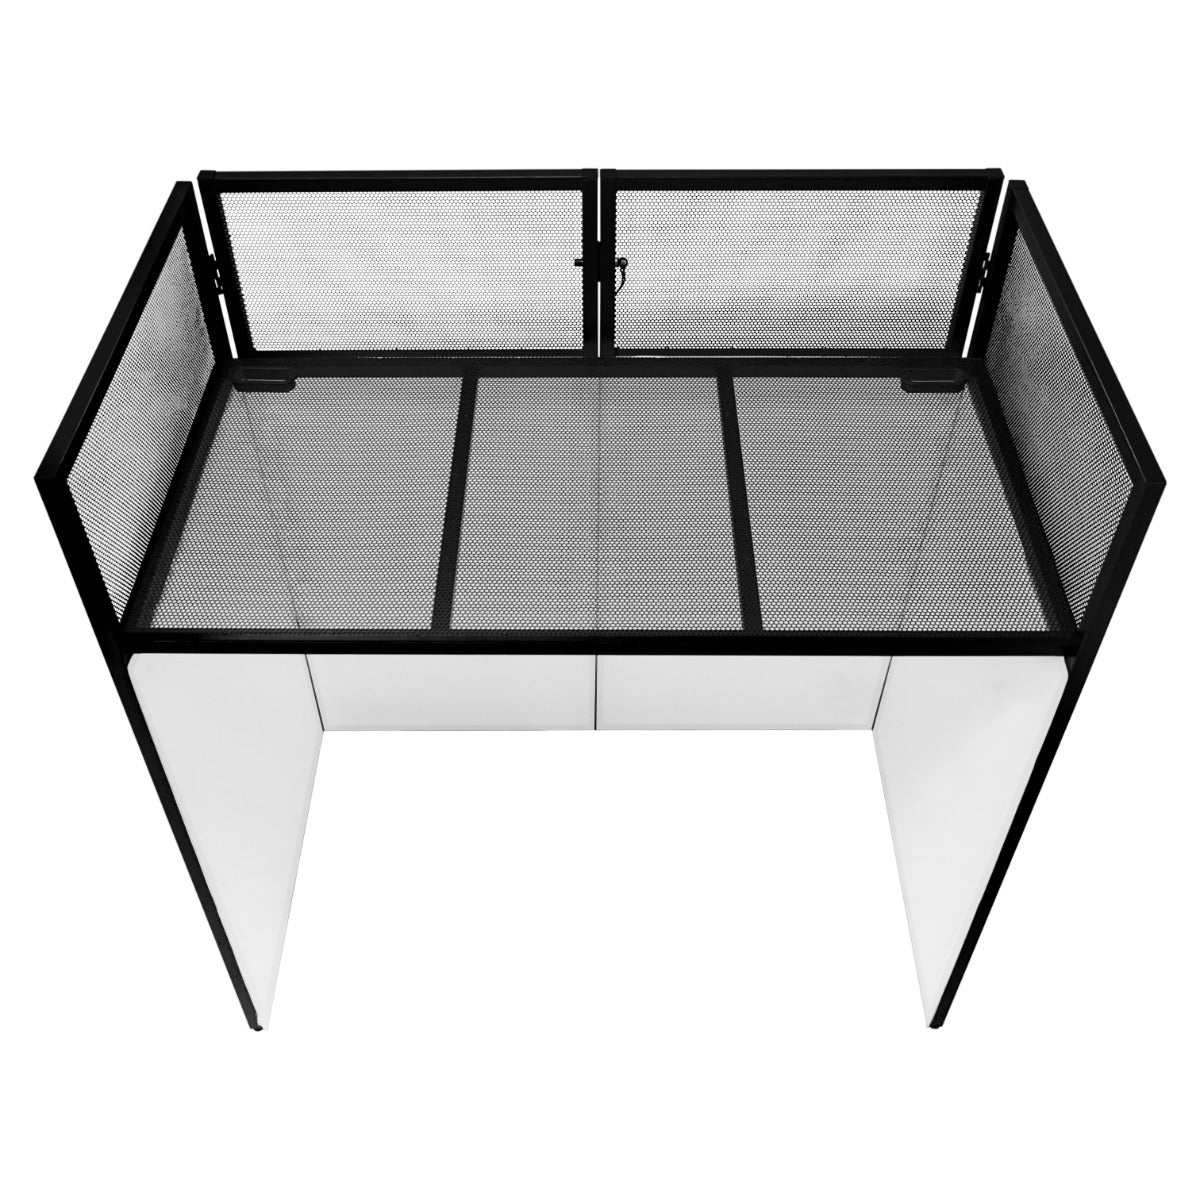 Supporto DJ Booth cabina tavolo pieghevole setup mobile discoteca nero e bianco